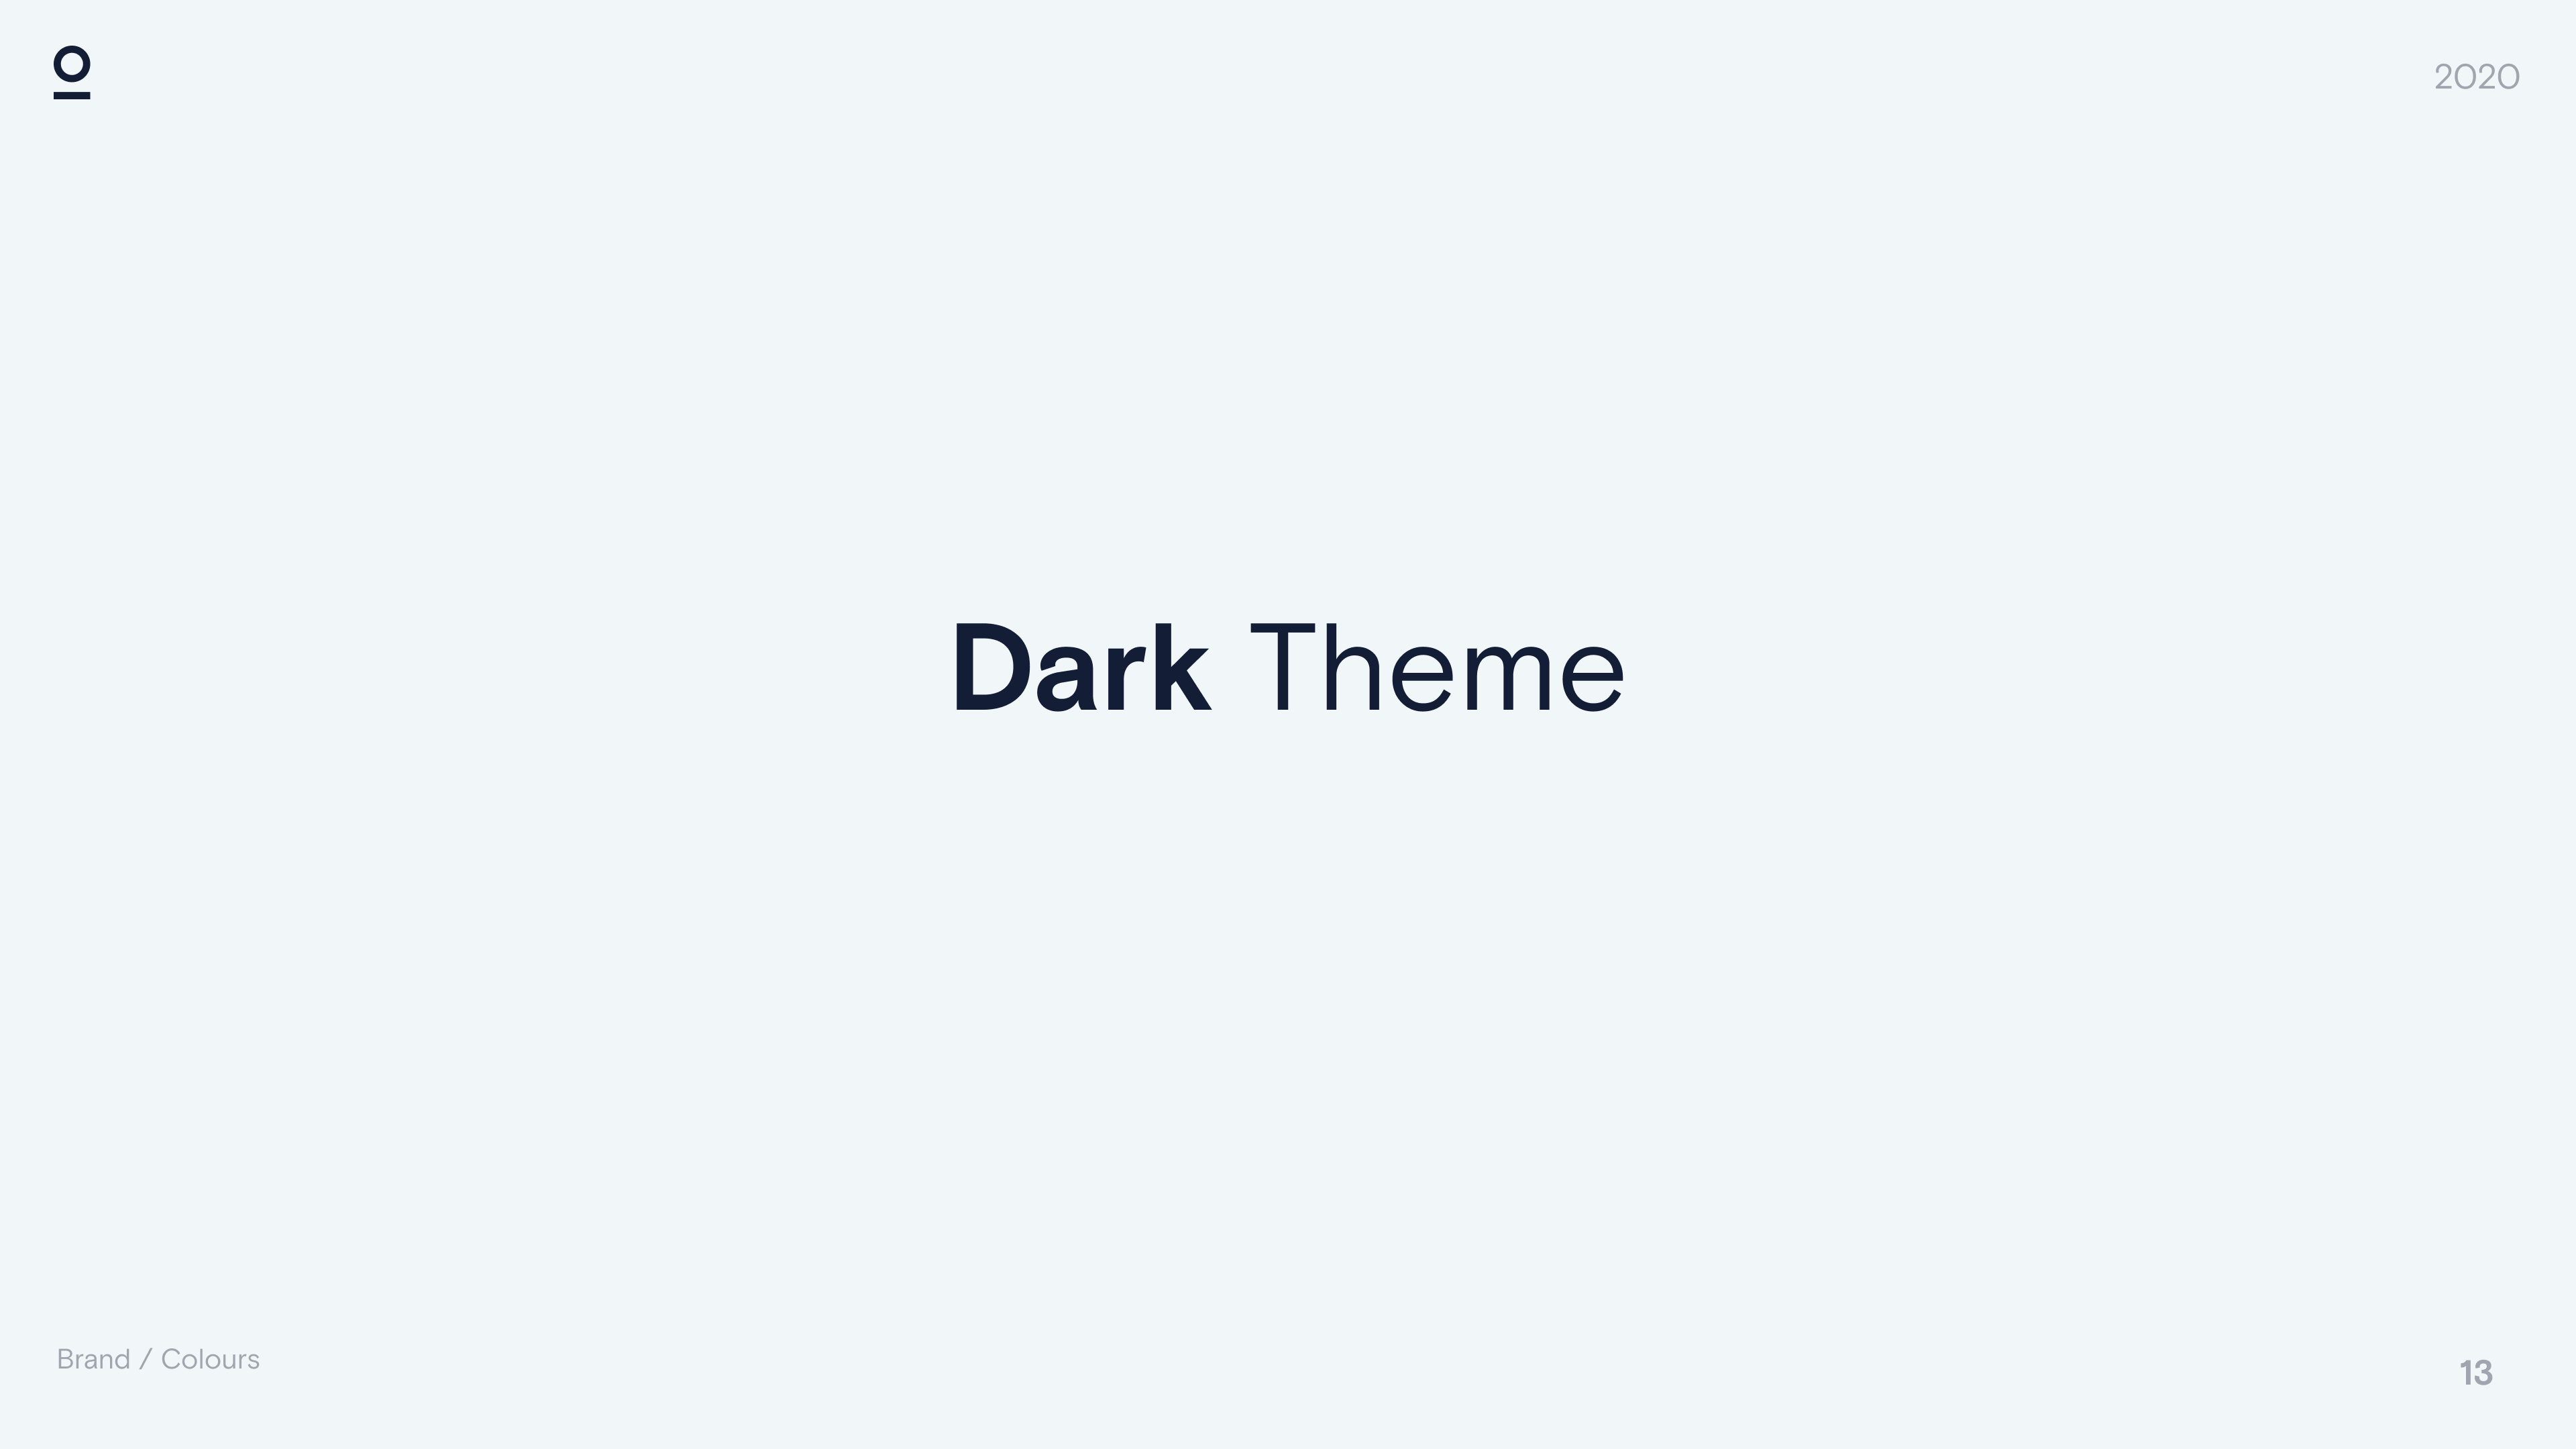 DarkTheme_Title